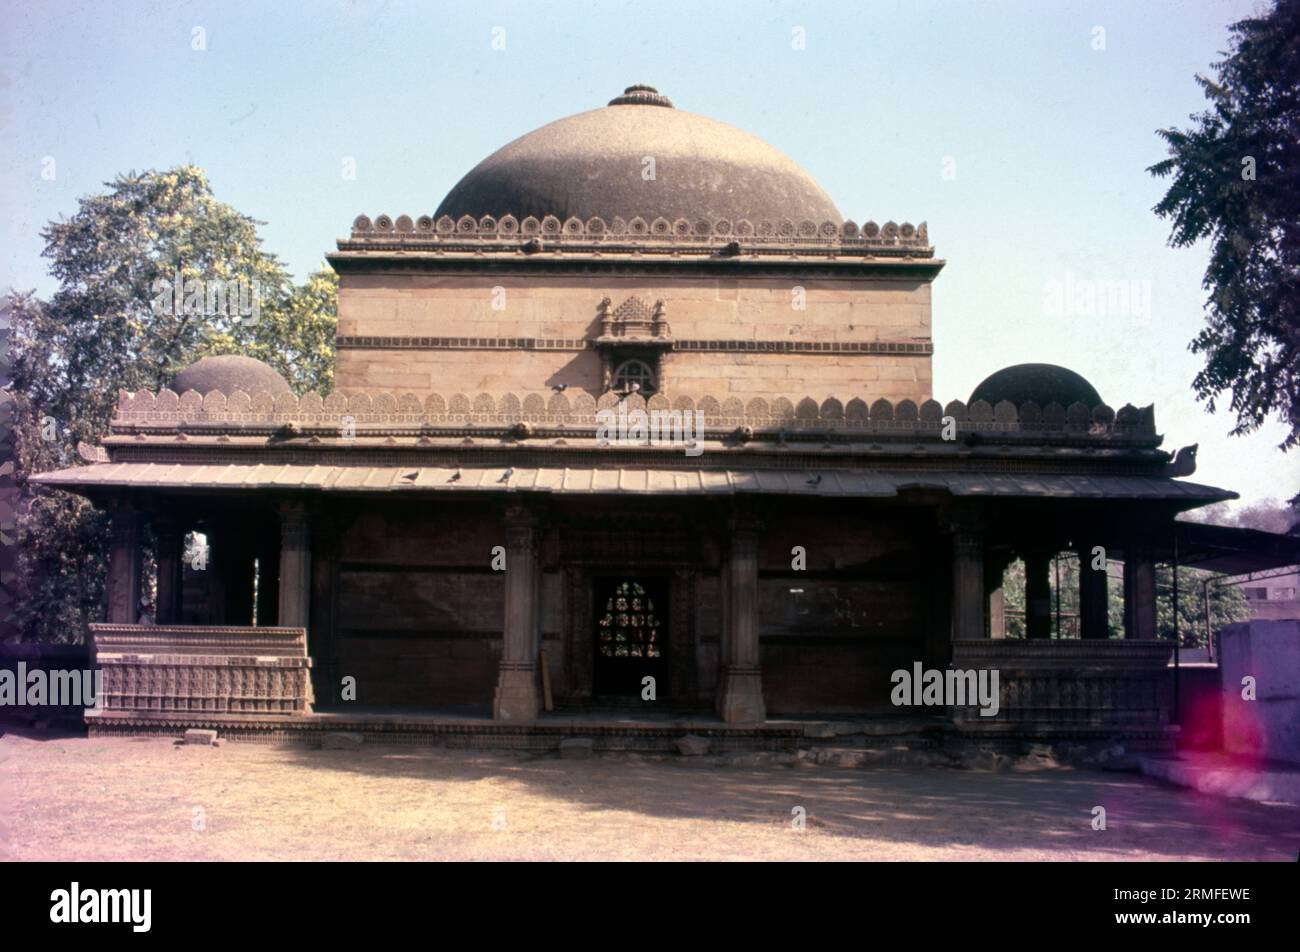 Il pozzo a gradini Bai Harir Sultani è un pozzo a gradini del XV secolo nell'area di Asarwa, a 15 km da Ahmedabad, Gujarat, India. Bai Harir Stepwell. Scala a gradini. Fu durante il regno di Mahmud Shah che Bai Harir Sultani, localmente noto come Dhai Harir, costruì il pozzo. Il nome in seguito venne corrotto in Dada Hari. Foto Stock